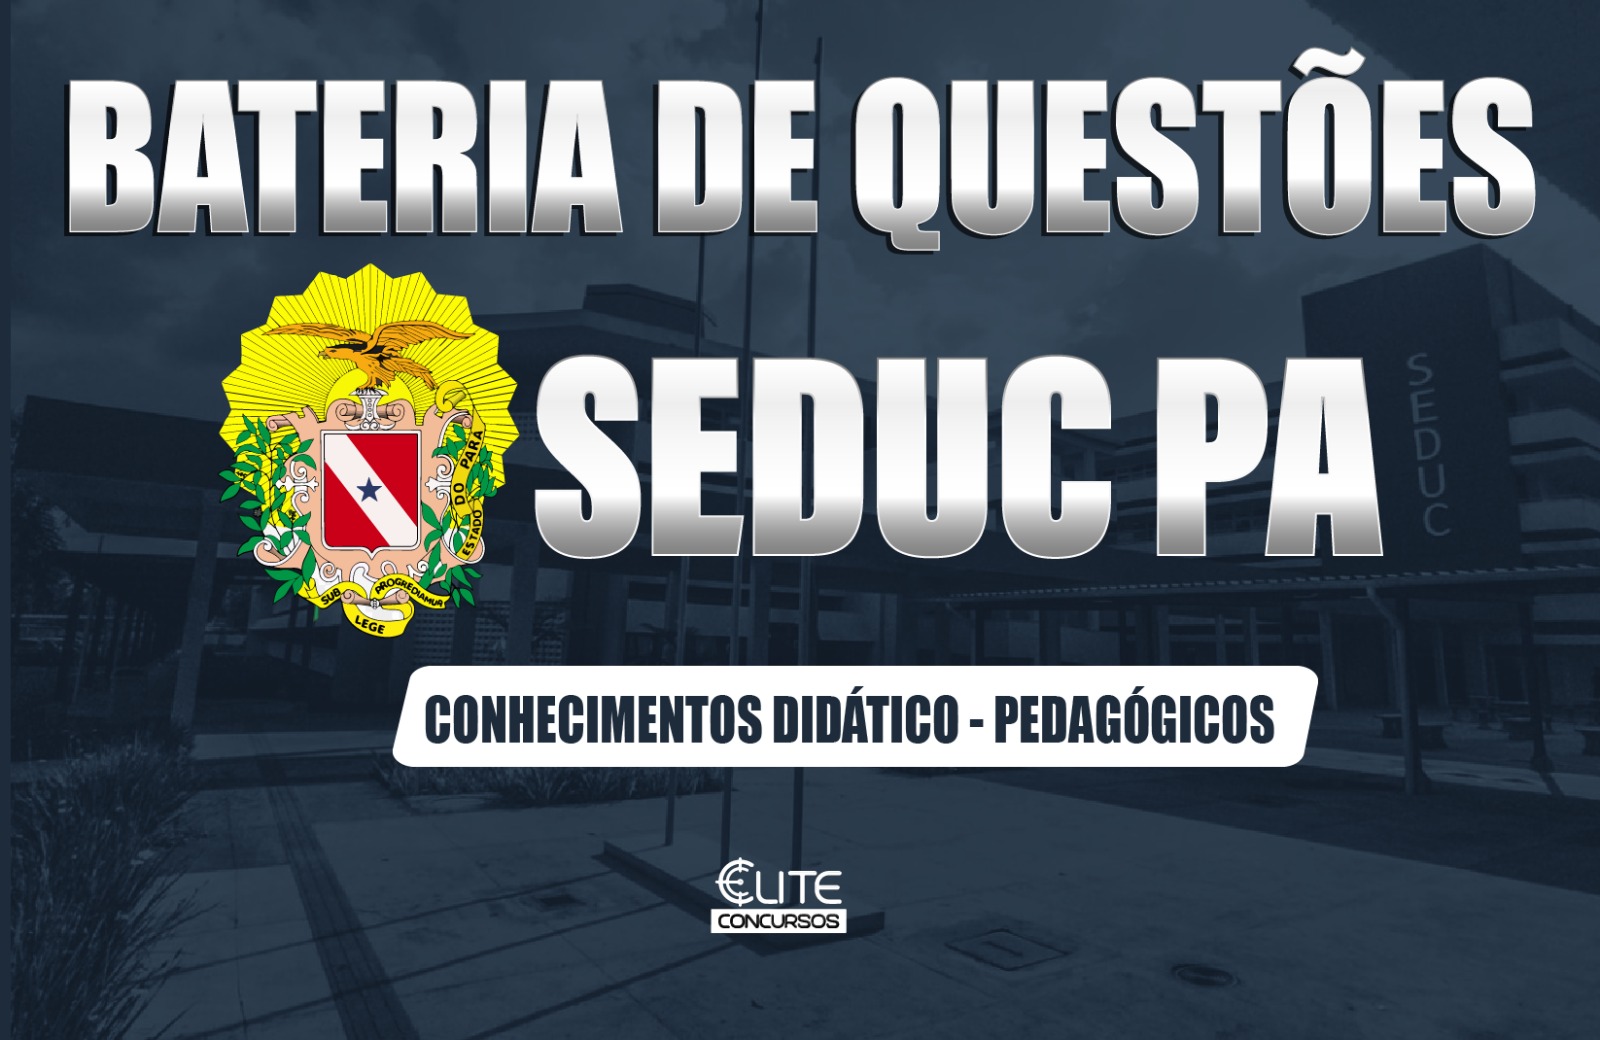 BATERIA DE QUEST�ES SEDUC/PA